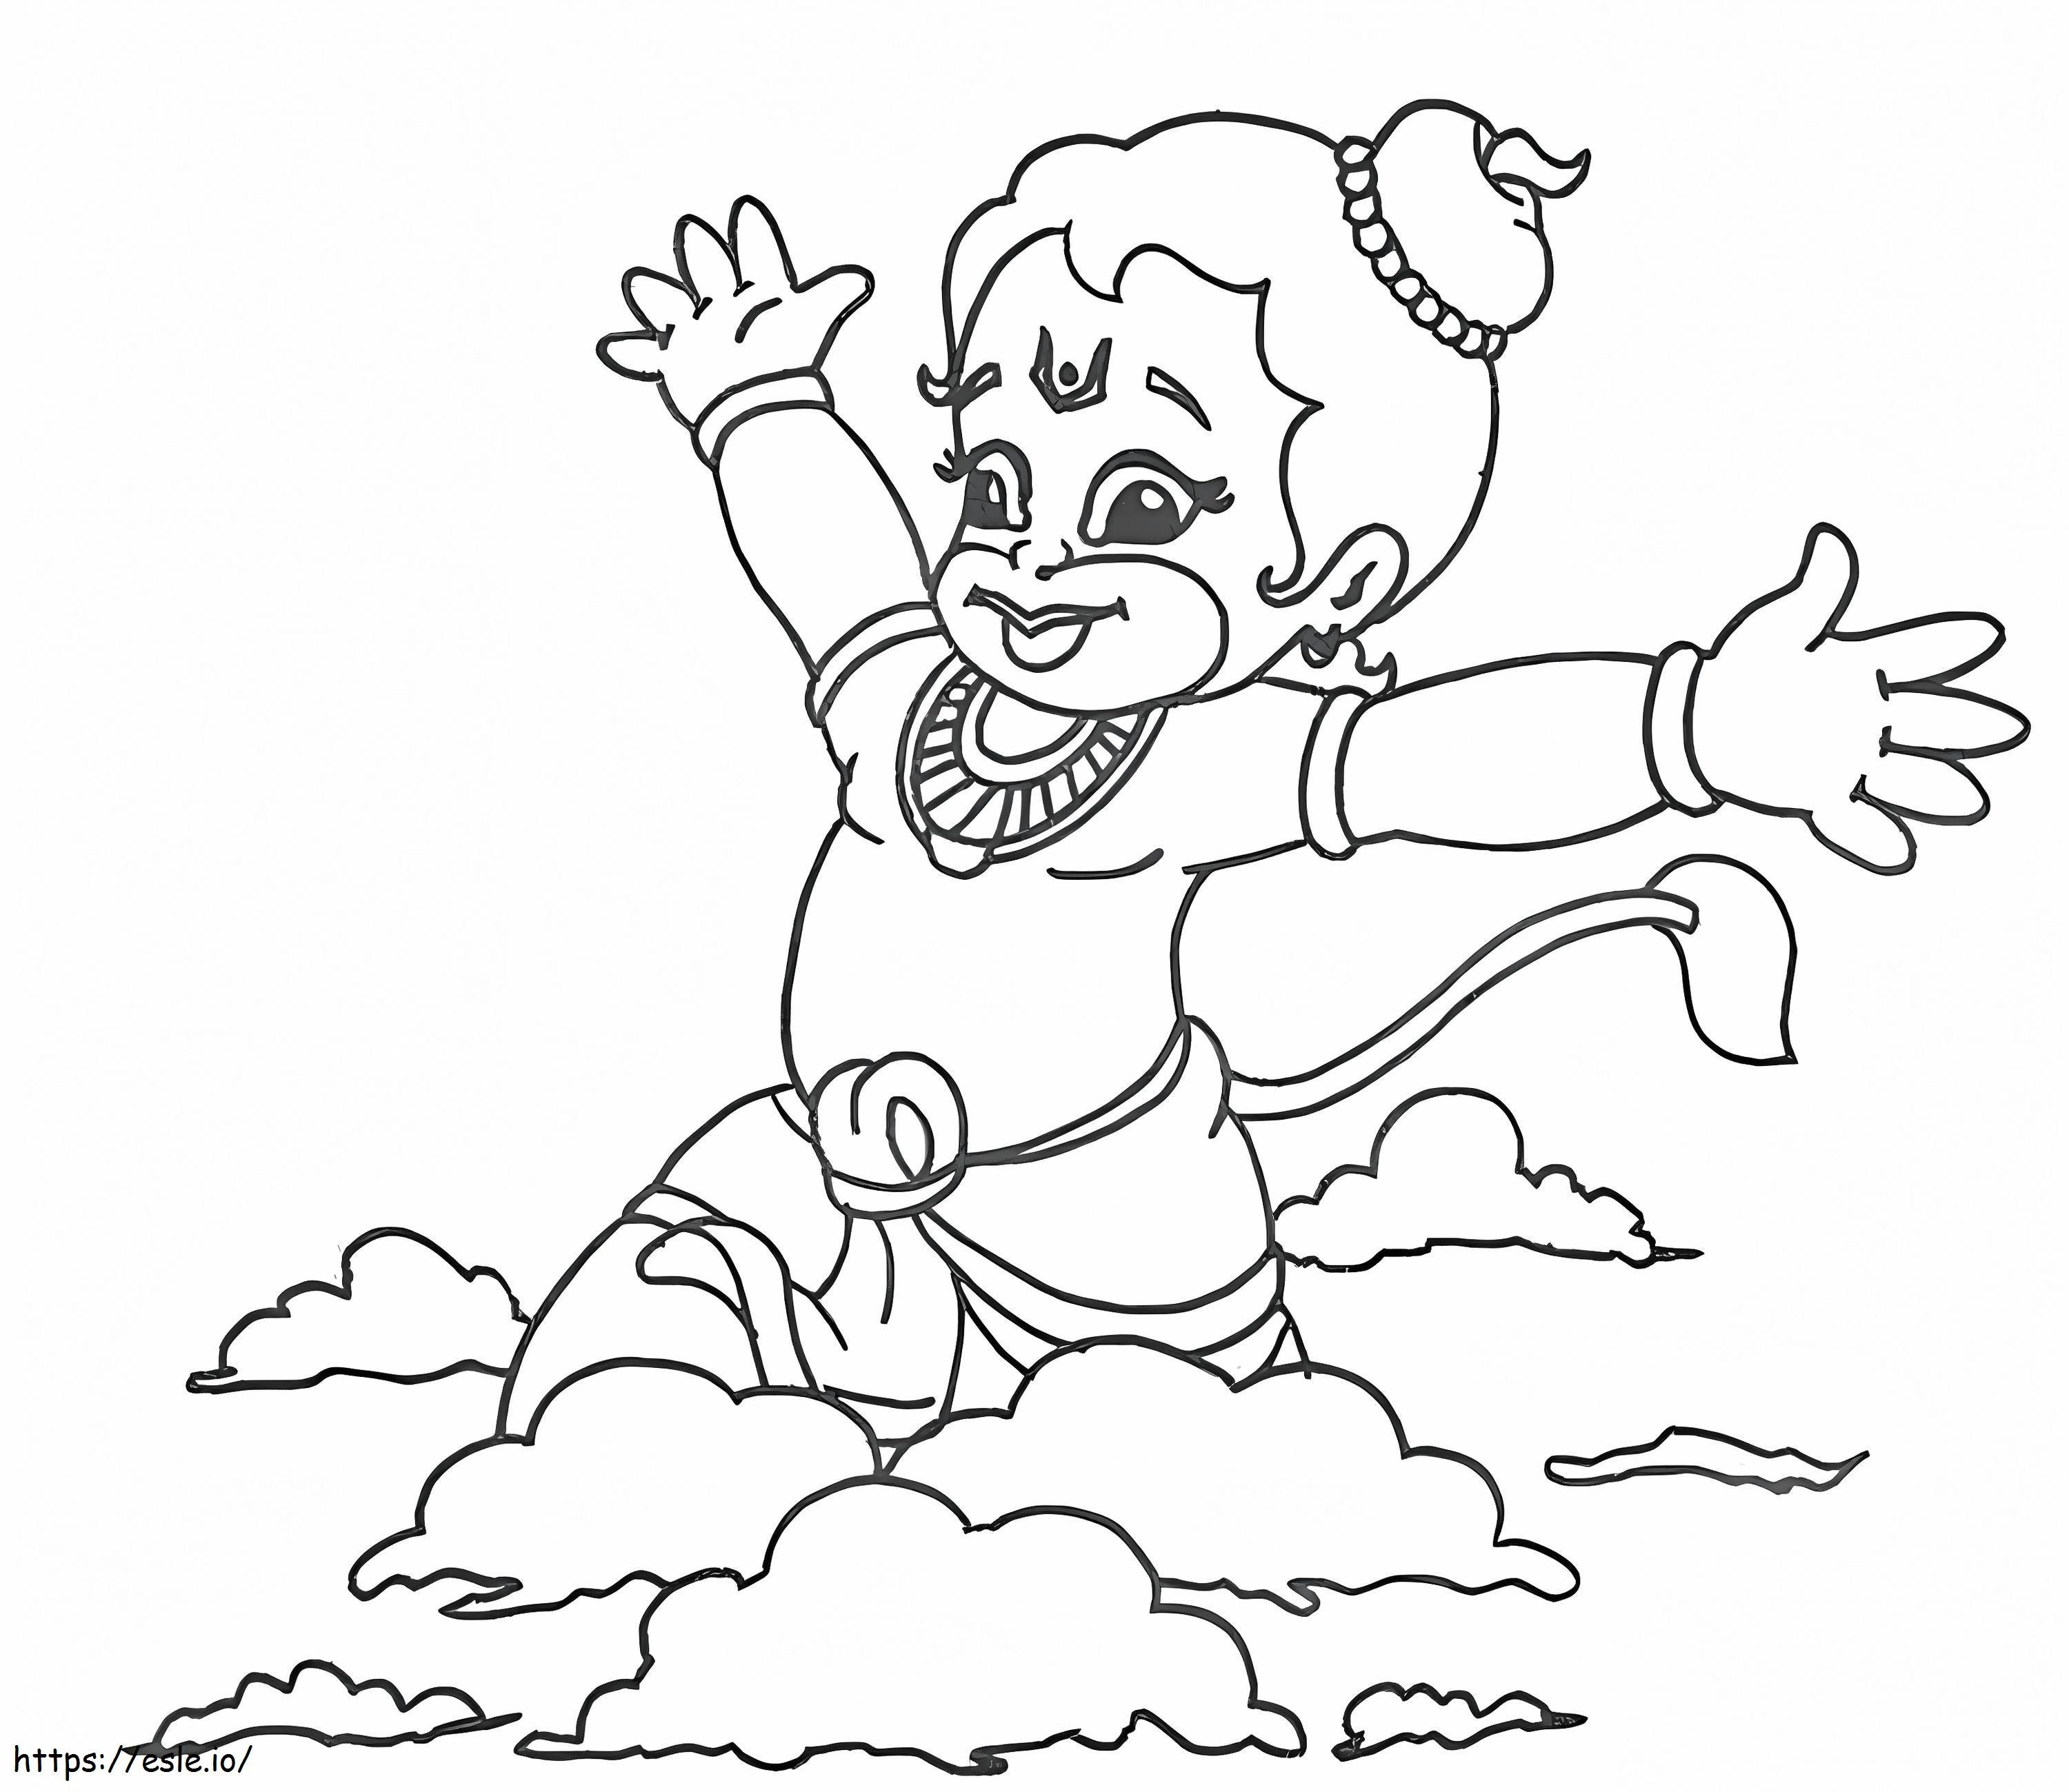 Hanuman Jayanti 1 ausmalbilder